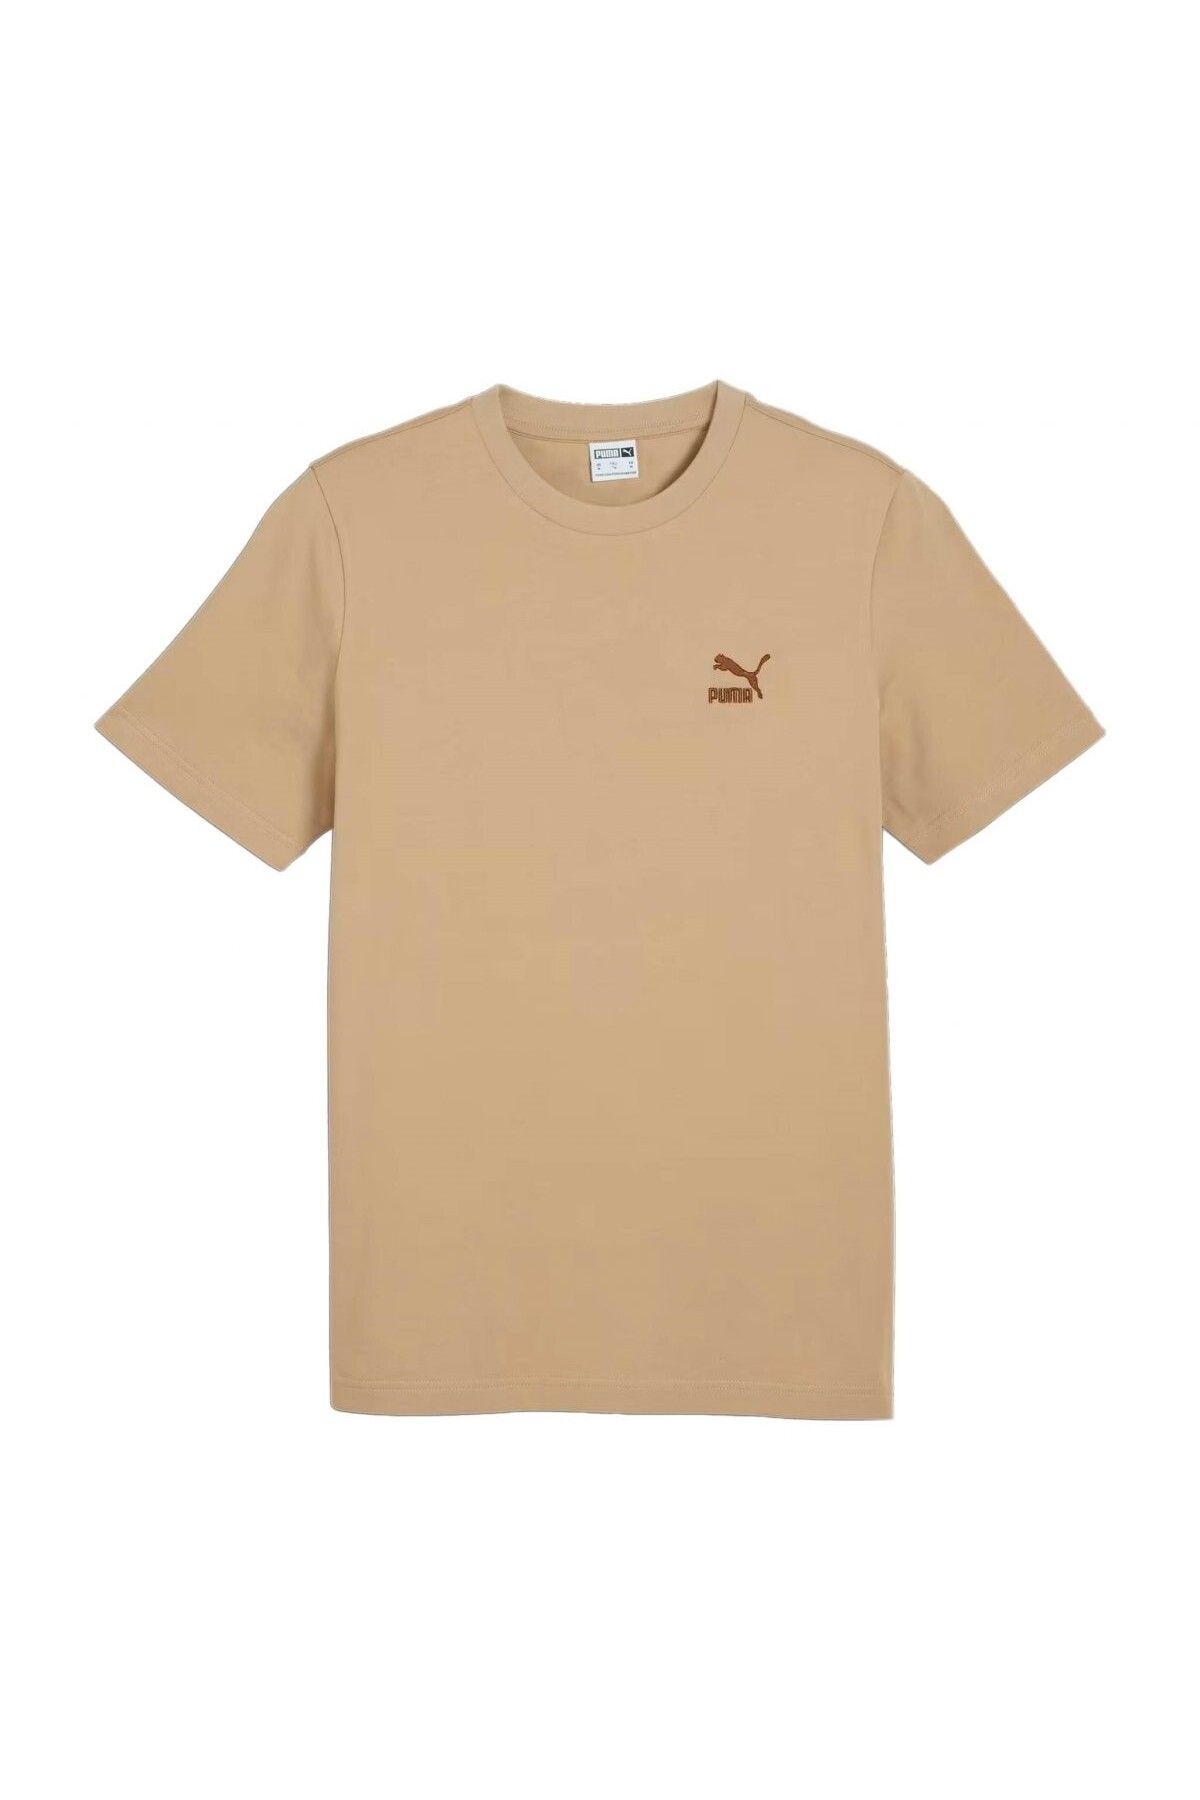 Puma Classıcs Small Logo Tee Bej T-Shirt